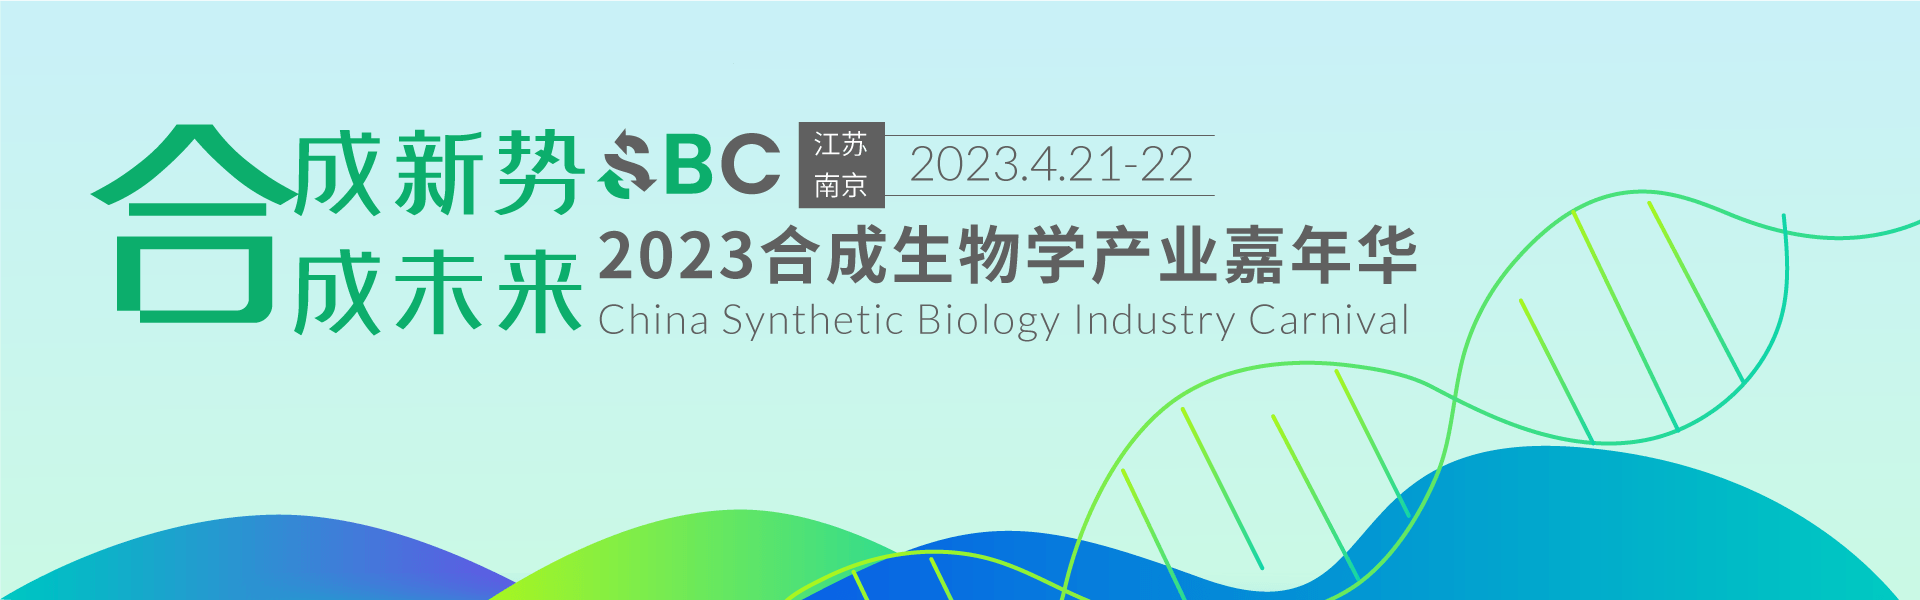 2023合成生物学产业嘉年华 SBC2023